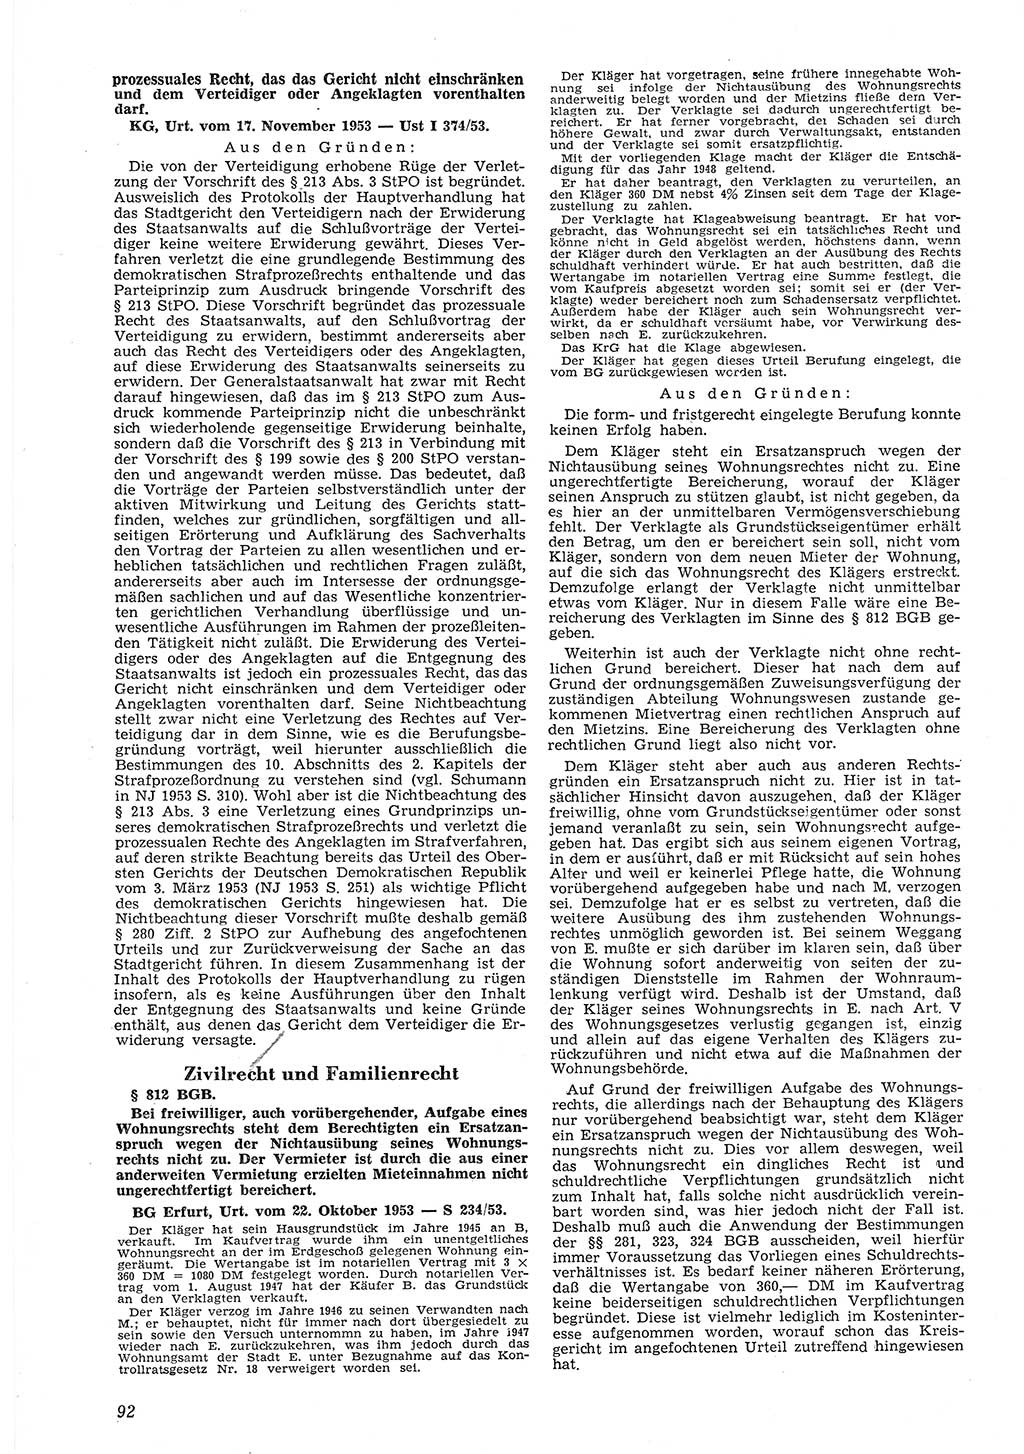 Neue Justiz (NJ), Zeitschrift für Recht und Rechtswissenschaft [Deutsche Demokratische Republik (DDR)], 8. Jahrgang 1954, Seite 92 (NJ DDR 1954, S. 92)